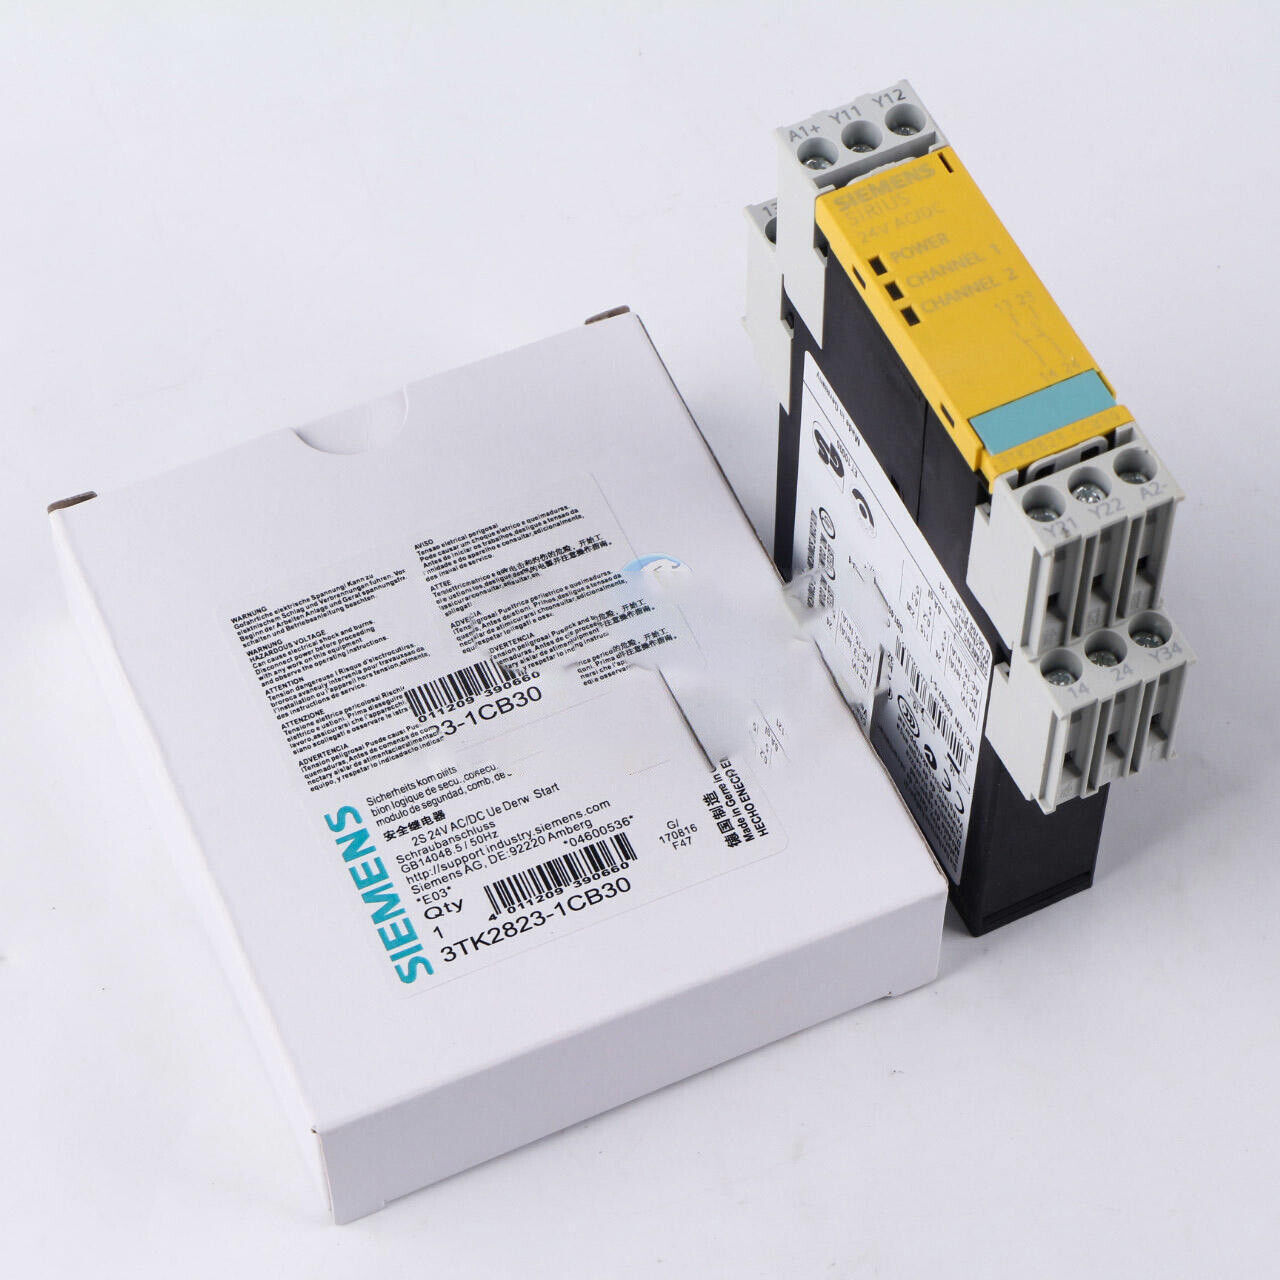 ONE Siemens Safety relay 3TK2823-1CB30 NEW